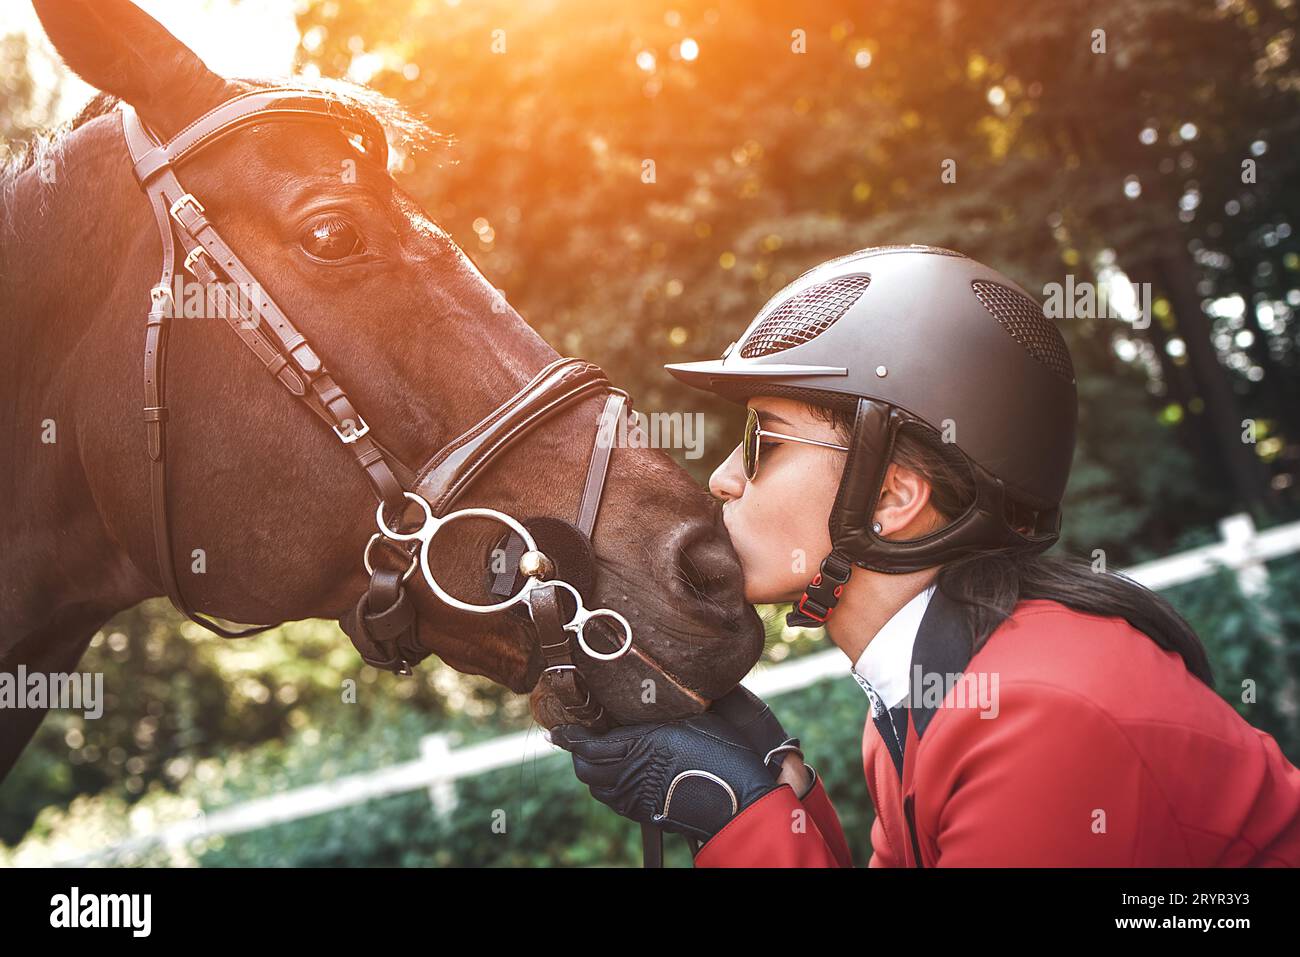 Ein junges Mädchen Jockey im Gespräch mit ihrem Pferd. Sie liebt die Tiere und verbringt freudig ihre Zeit in ihrer Umgebung. Stockfoto